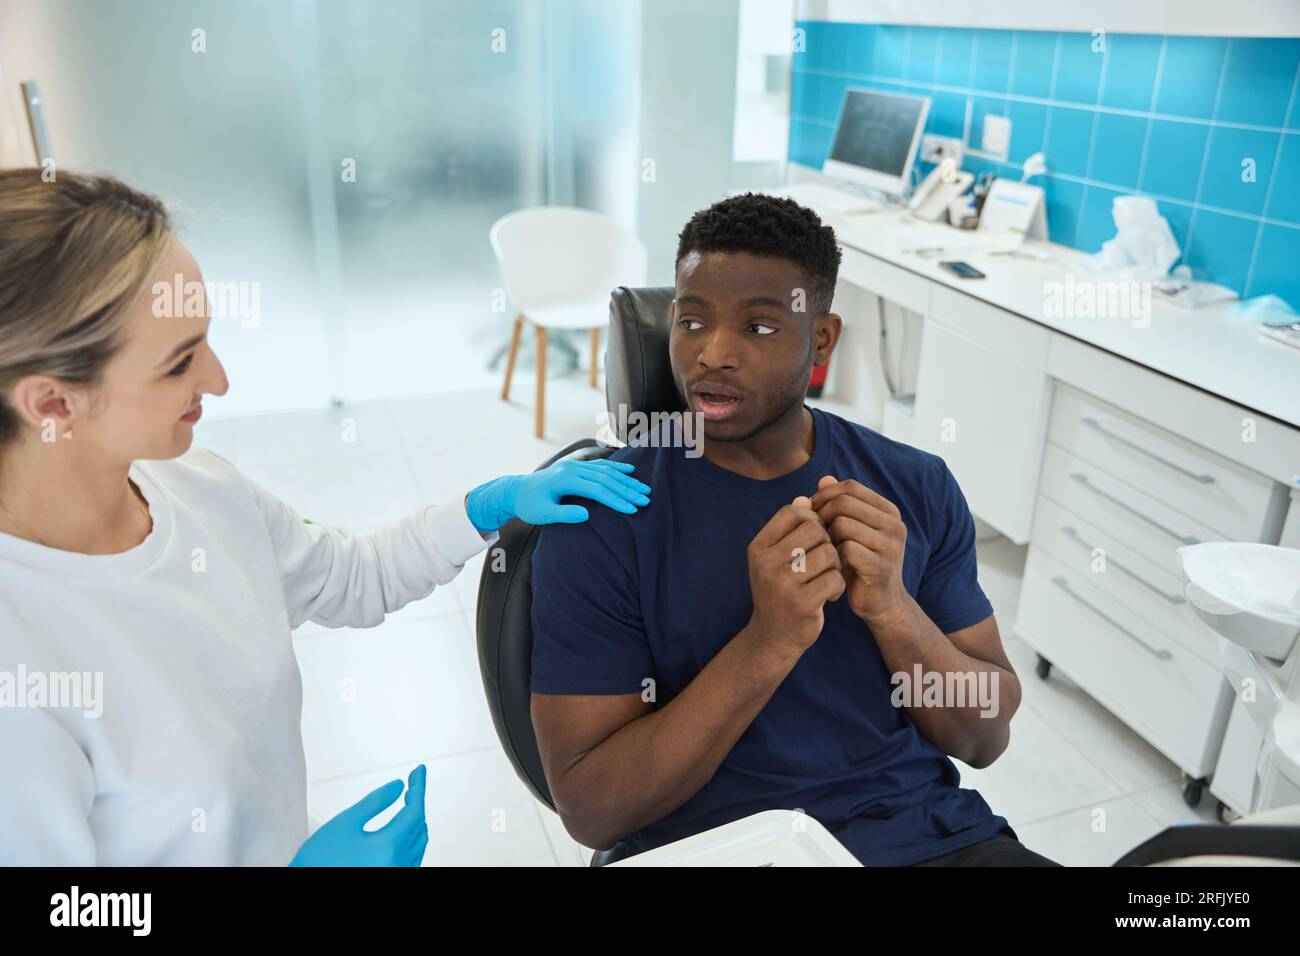 Una donna sorridente dentista che si calmano spaventò un giovane afroamericano che veniva a prendere appuntamento con un medico e sedeva in una sedia dentale Foto Stock